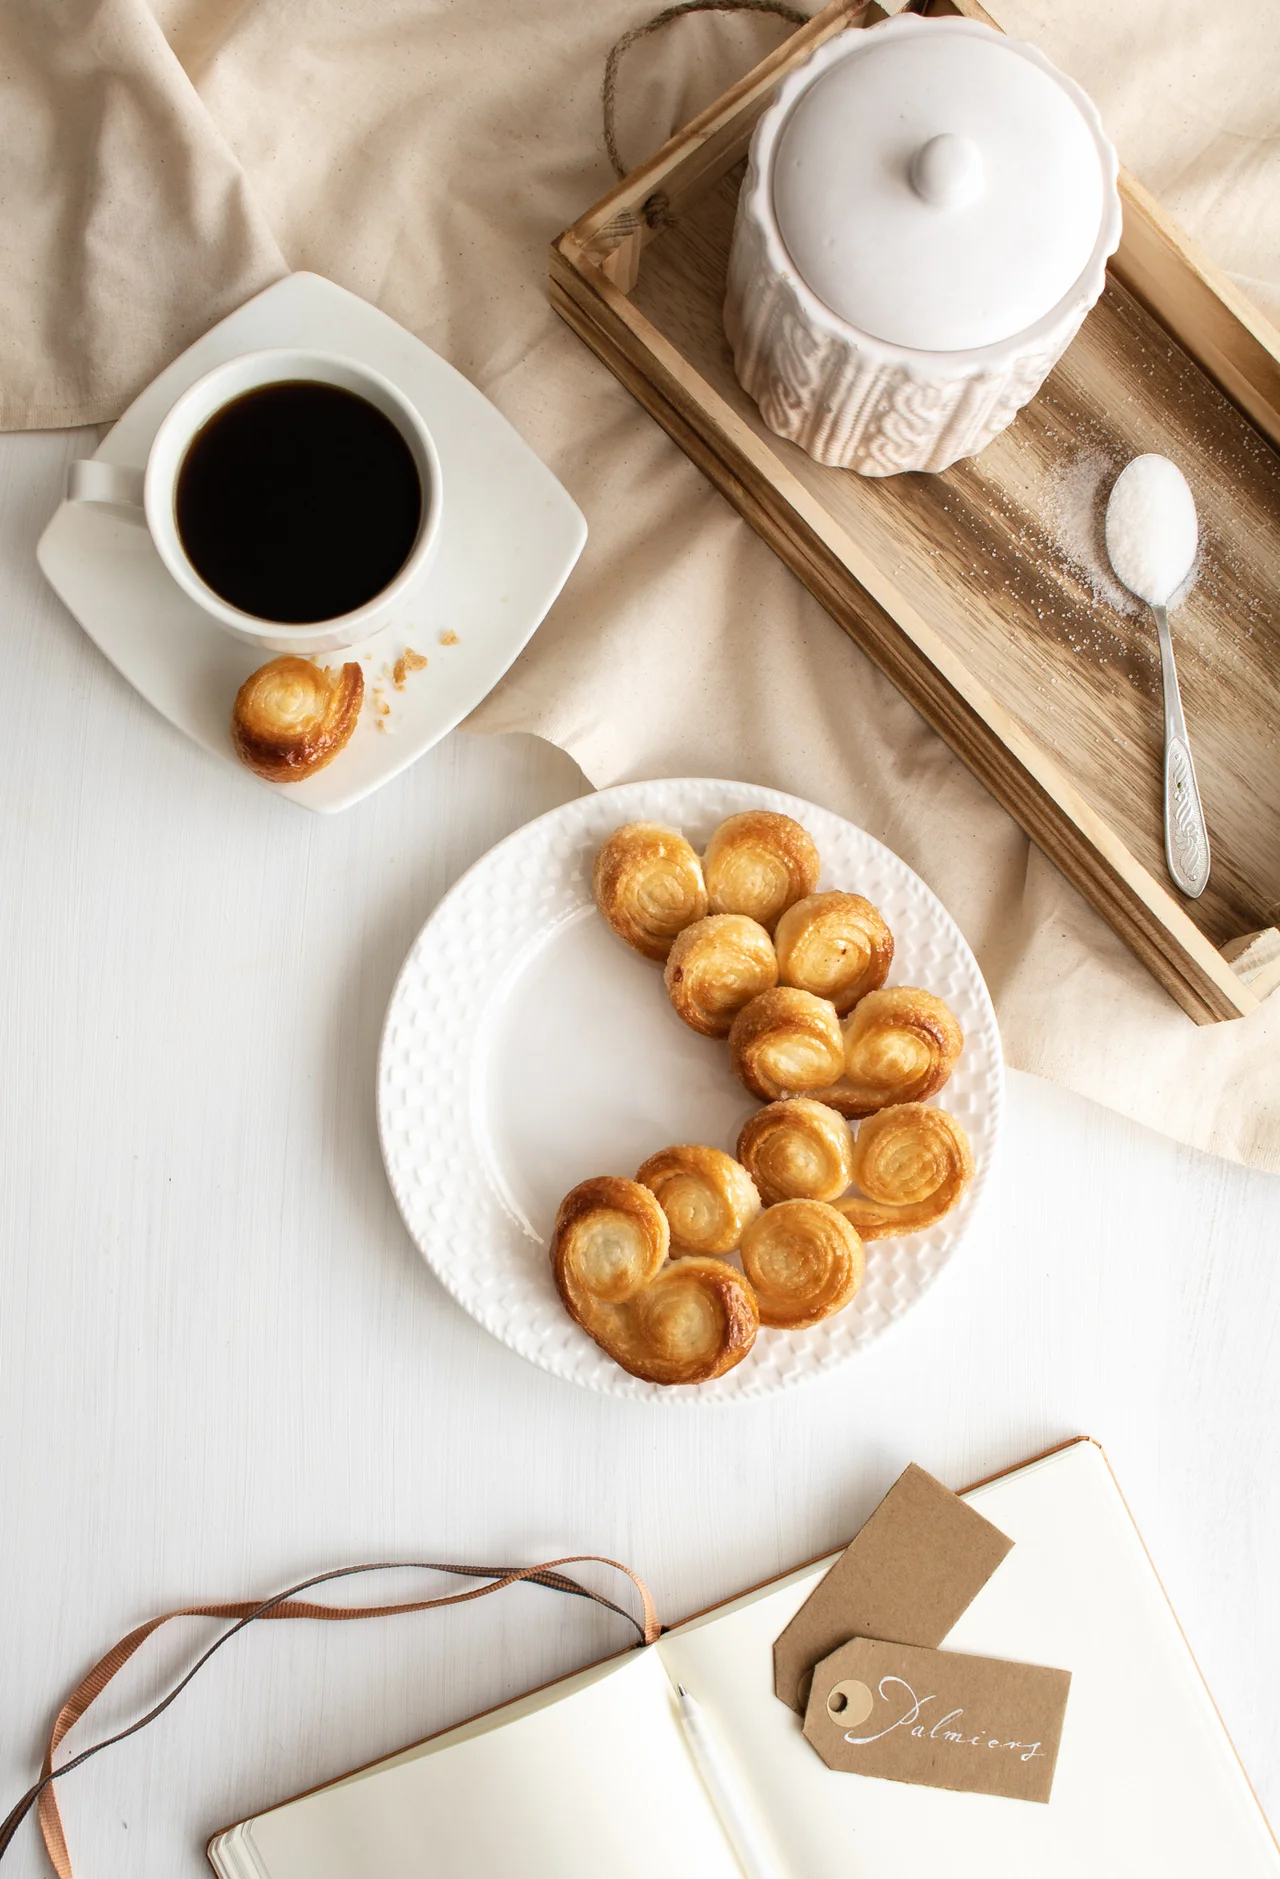 Palmiers – łatwe ciasteczka francuskie (2 składniki)